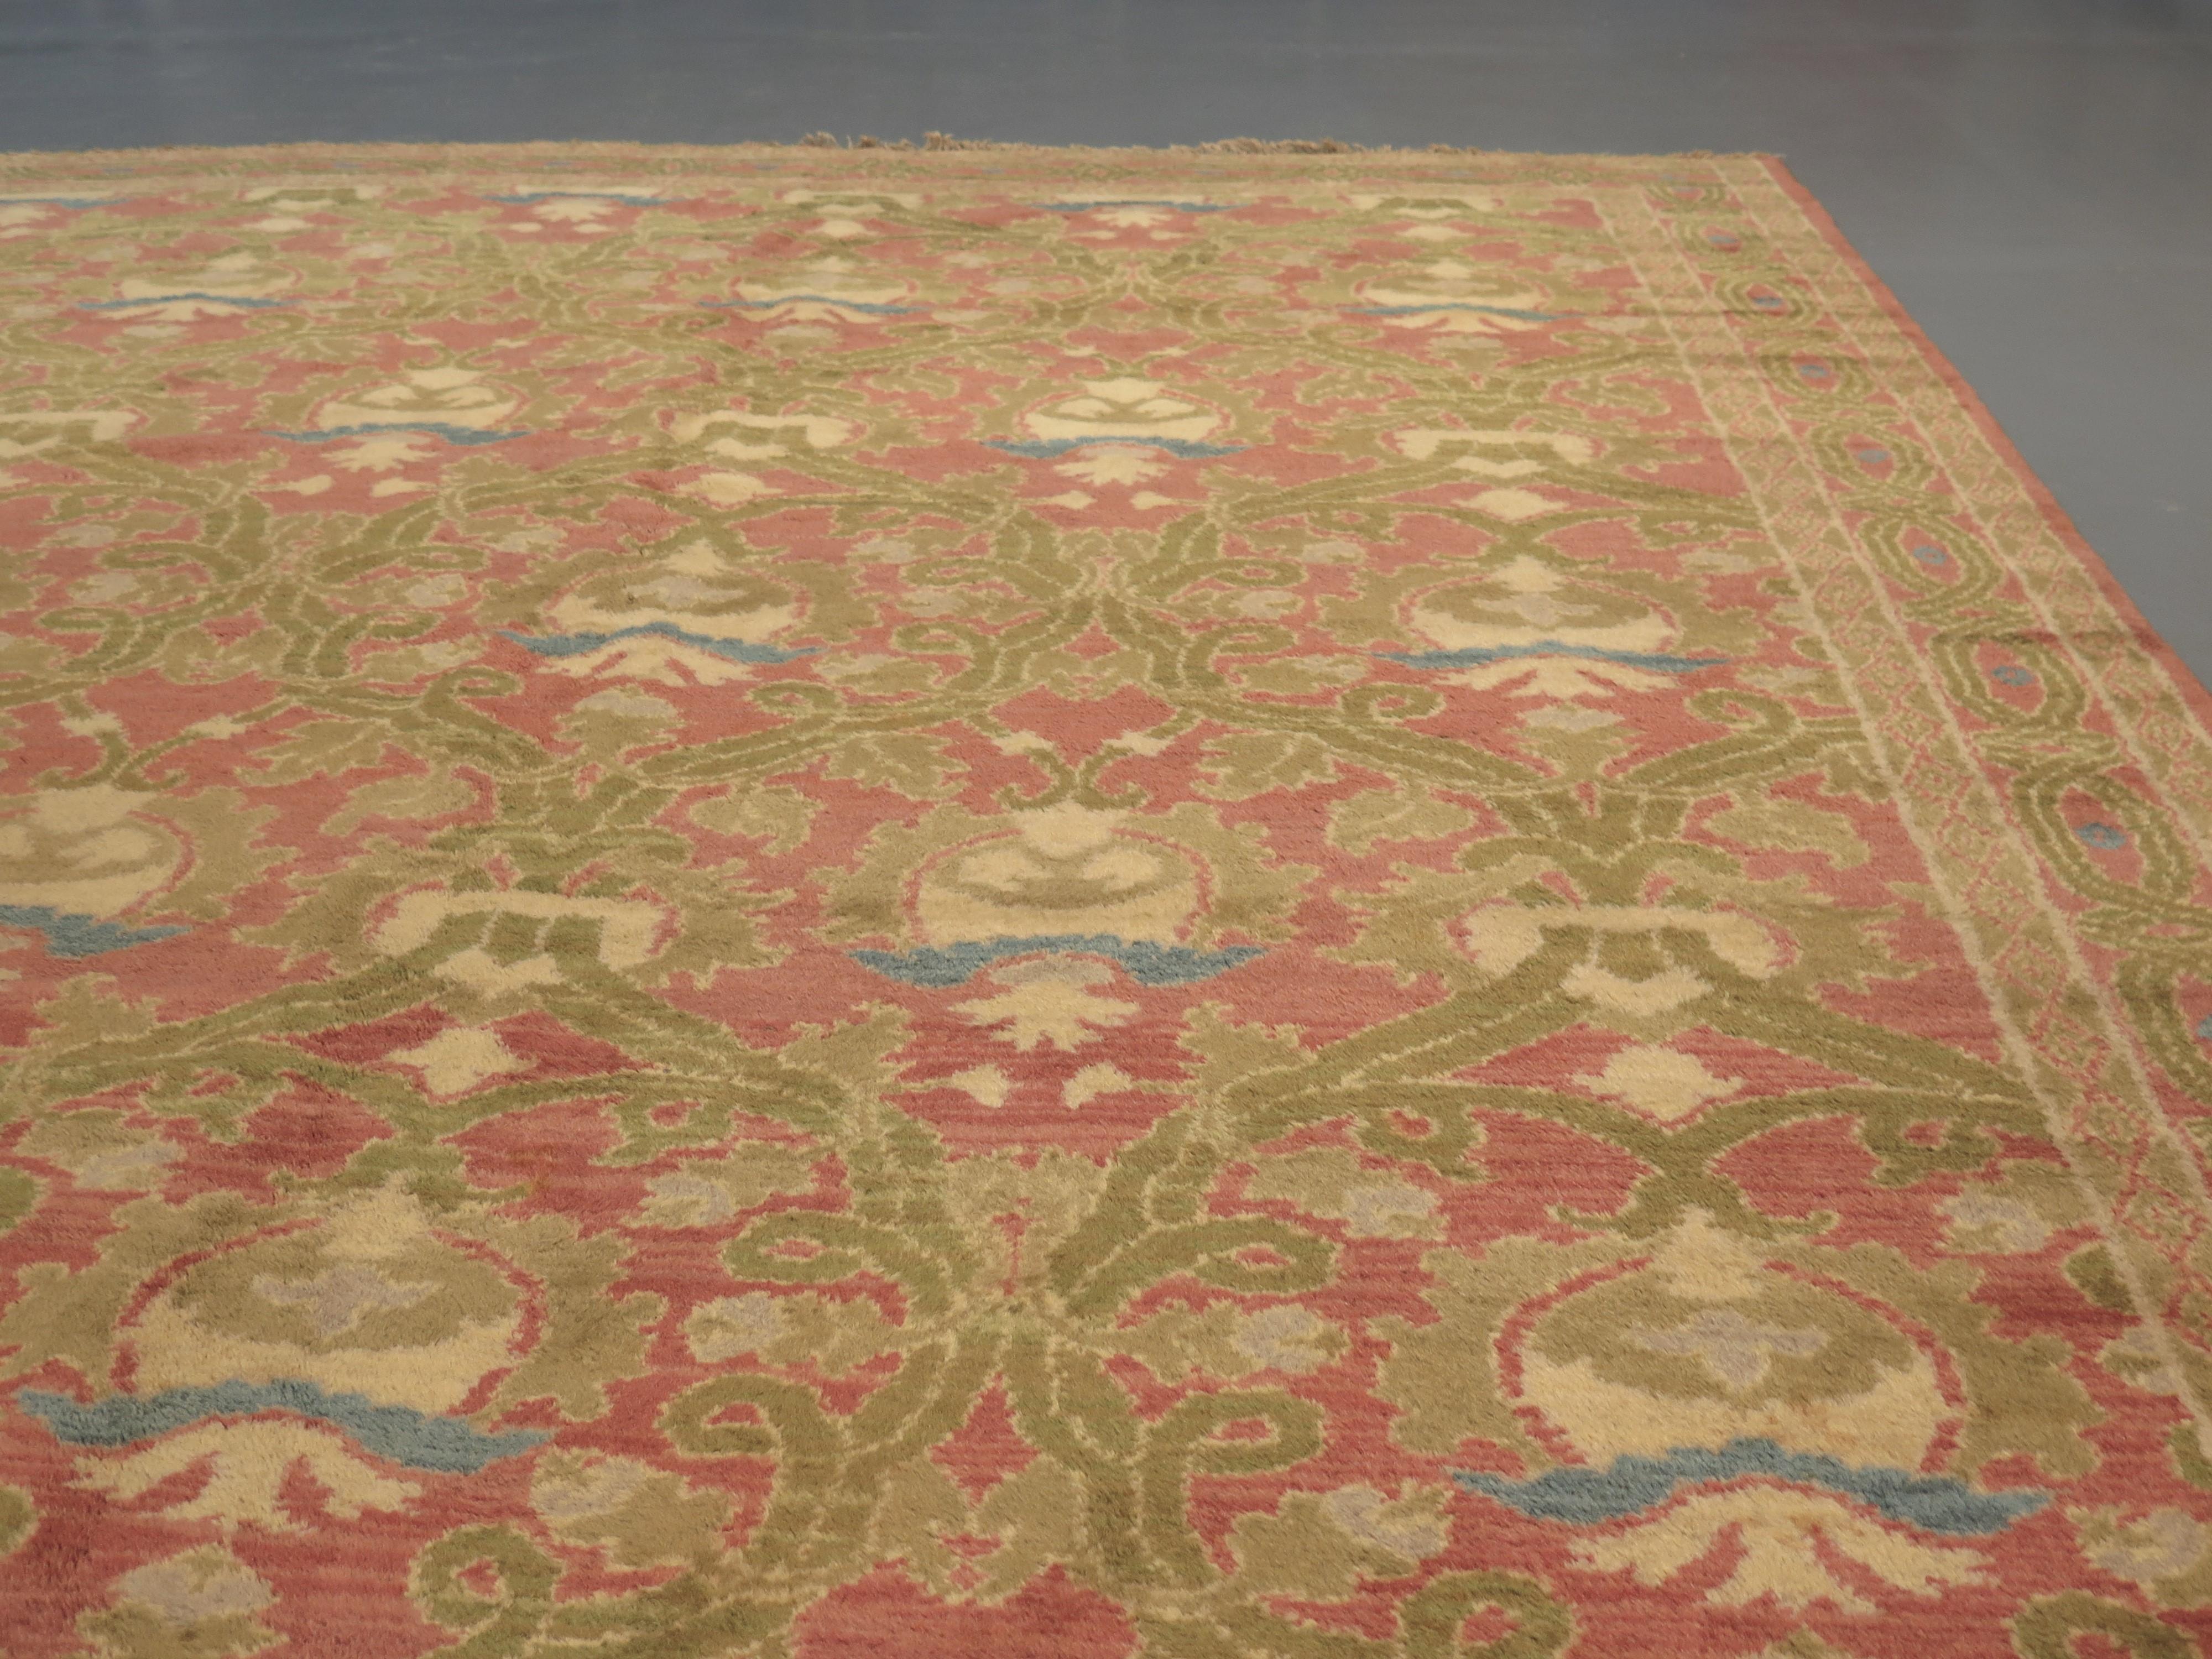 Ein attraktiver Cuenca-Teppich aus dem frühen 20. Jahrhundert, der von der Arts-and-Crafts-Bewegung beeinflusst ist, die zwischen 1880 und 1920 in Europa und Nordamerika blühte.

Dieser Teppich aus Cuenca besticht durch seine frischen, pflanzlich